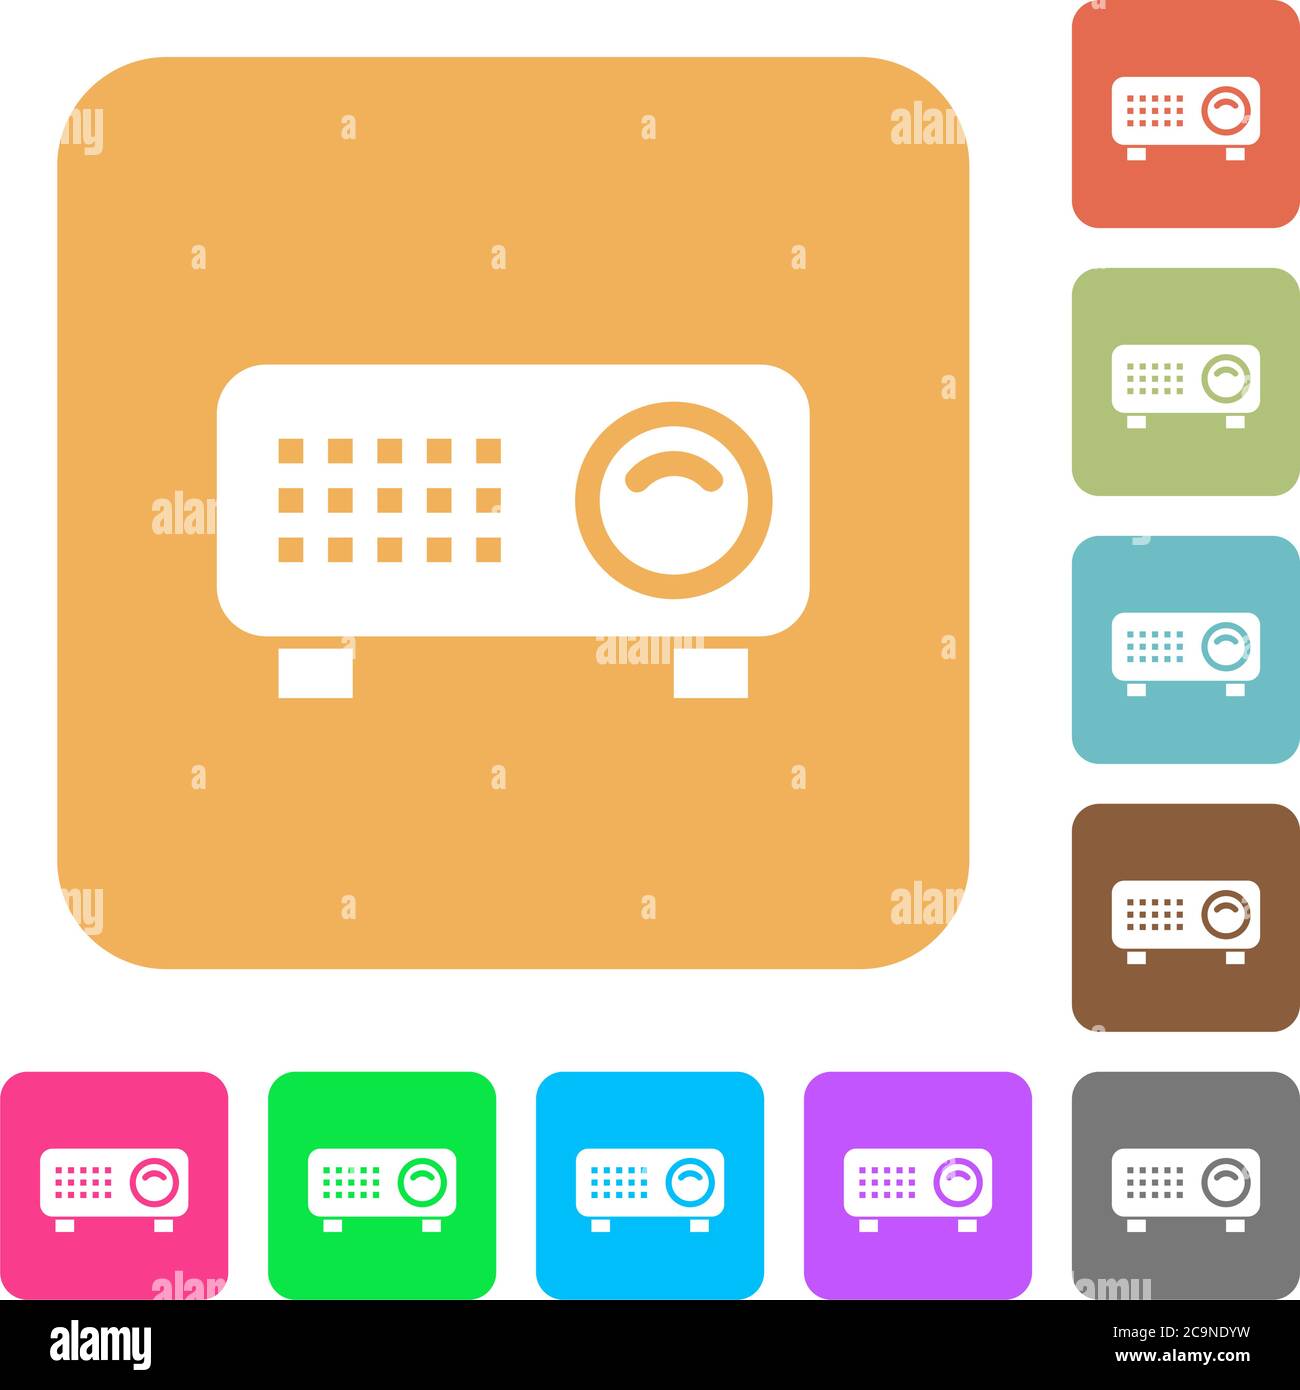 Icone piatte del proiettore video su sfondi quadrati arrotondati dai colori vivaci. Illustrazione Vettoriale